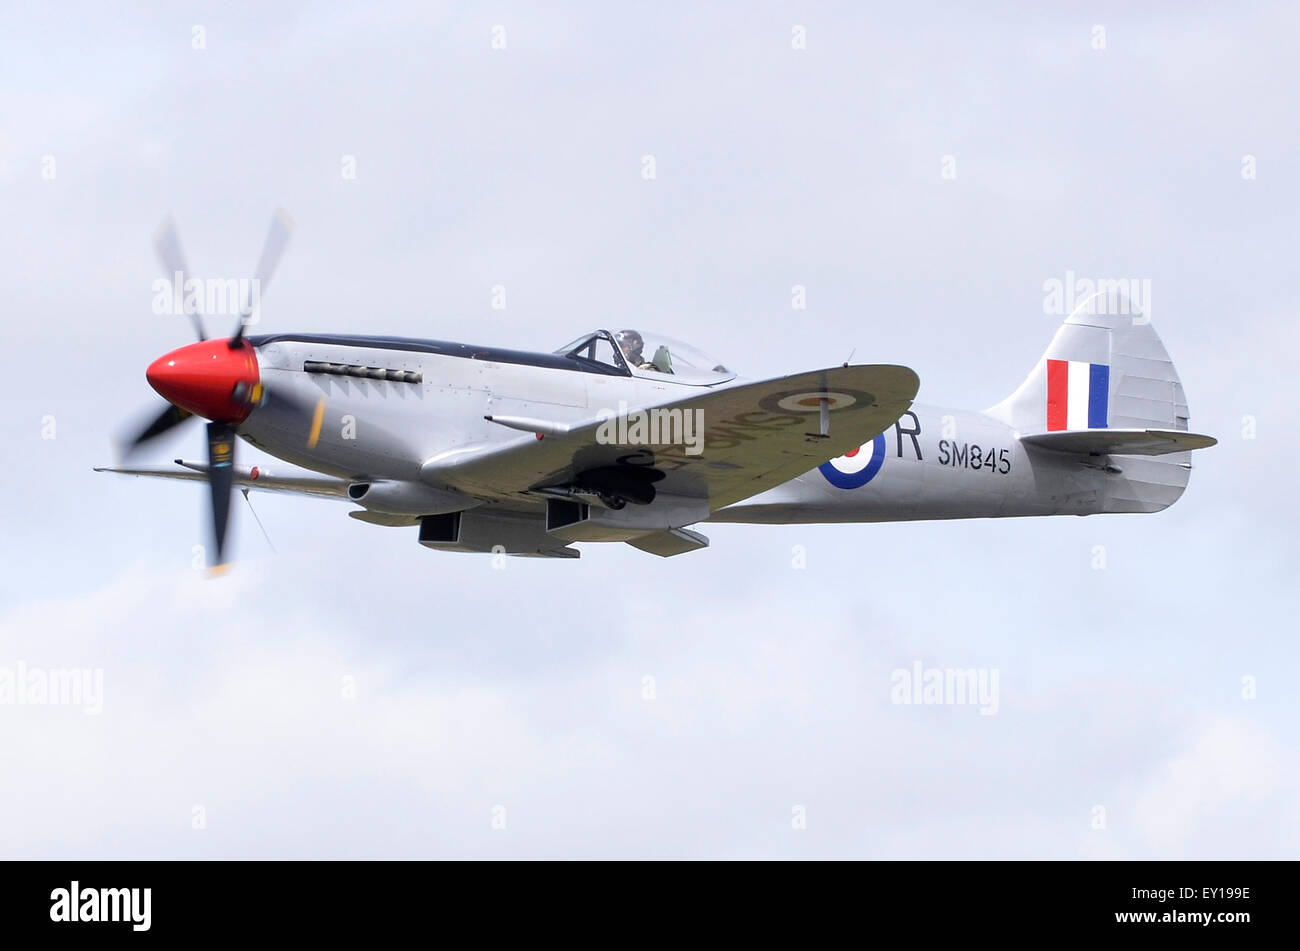 Spitfire Mk XVIII plan en affichant dans les marquages RAF RIAT 2015's 75e anniversaire de la bataille d'Angleterre défilés aériens, Fairford, UK. Crédit : Antony l'ortie/Alamy Live News Banque D'Images